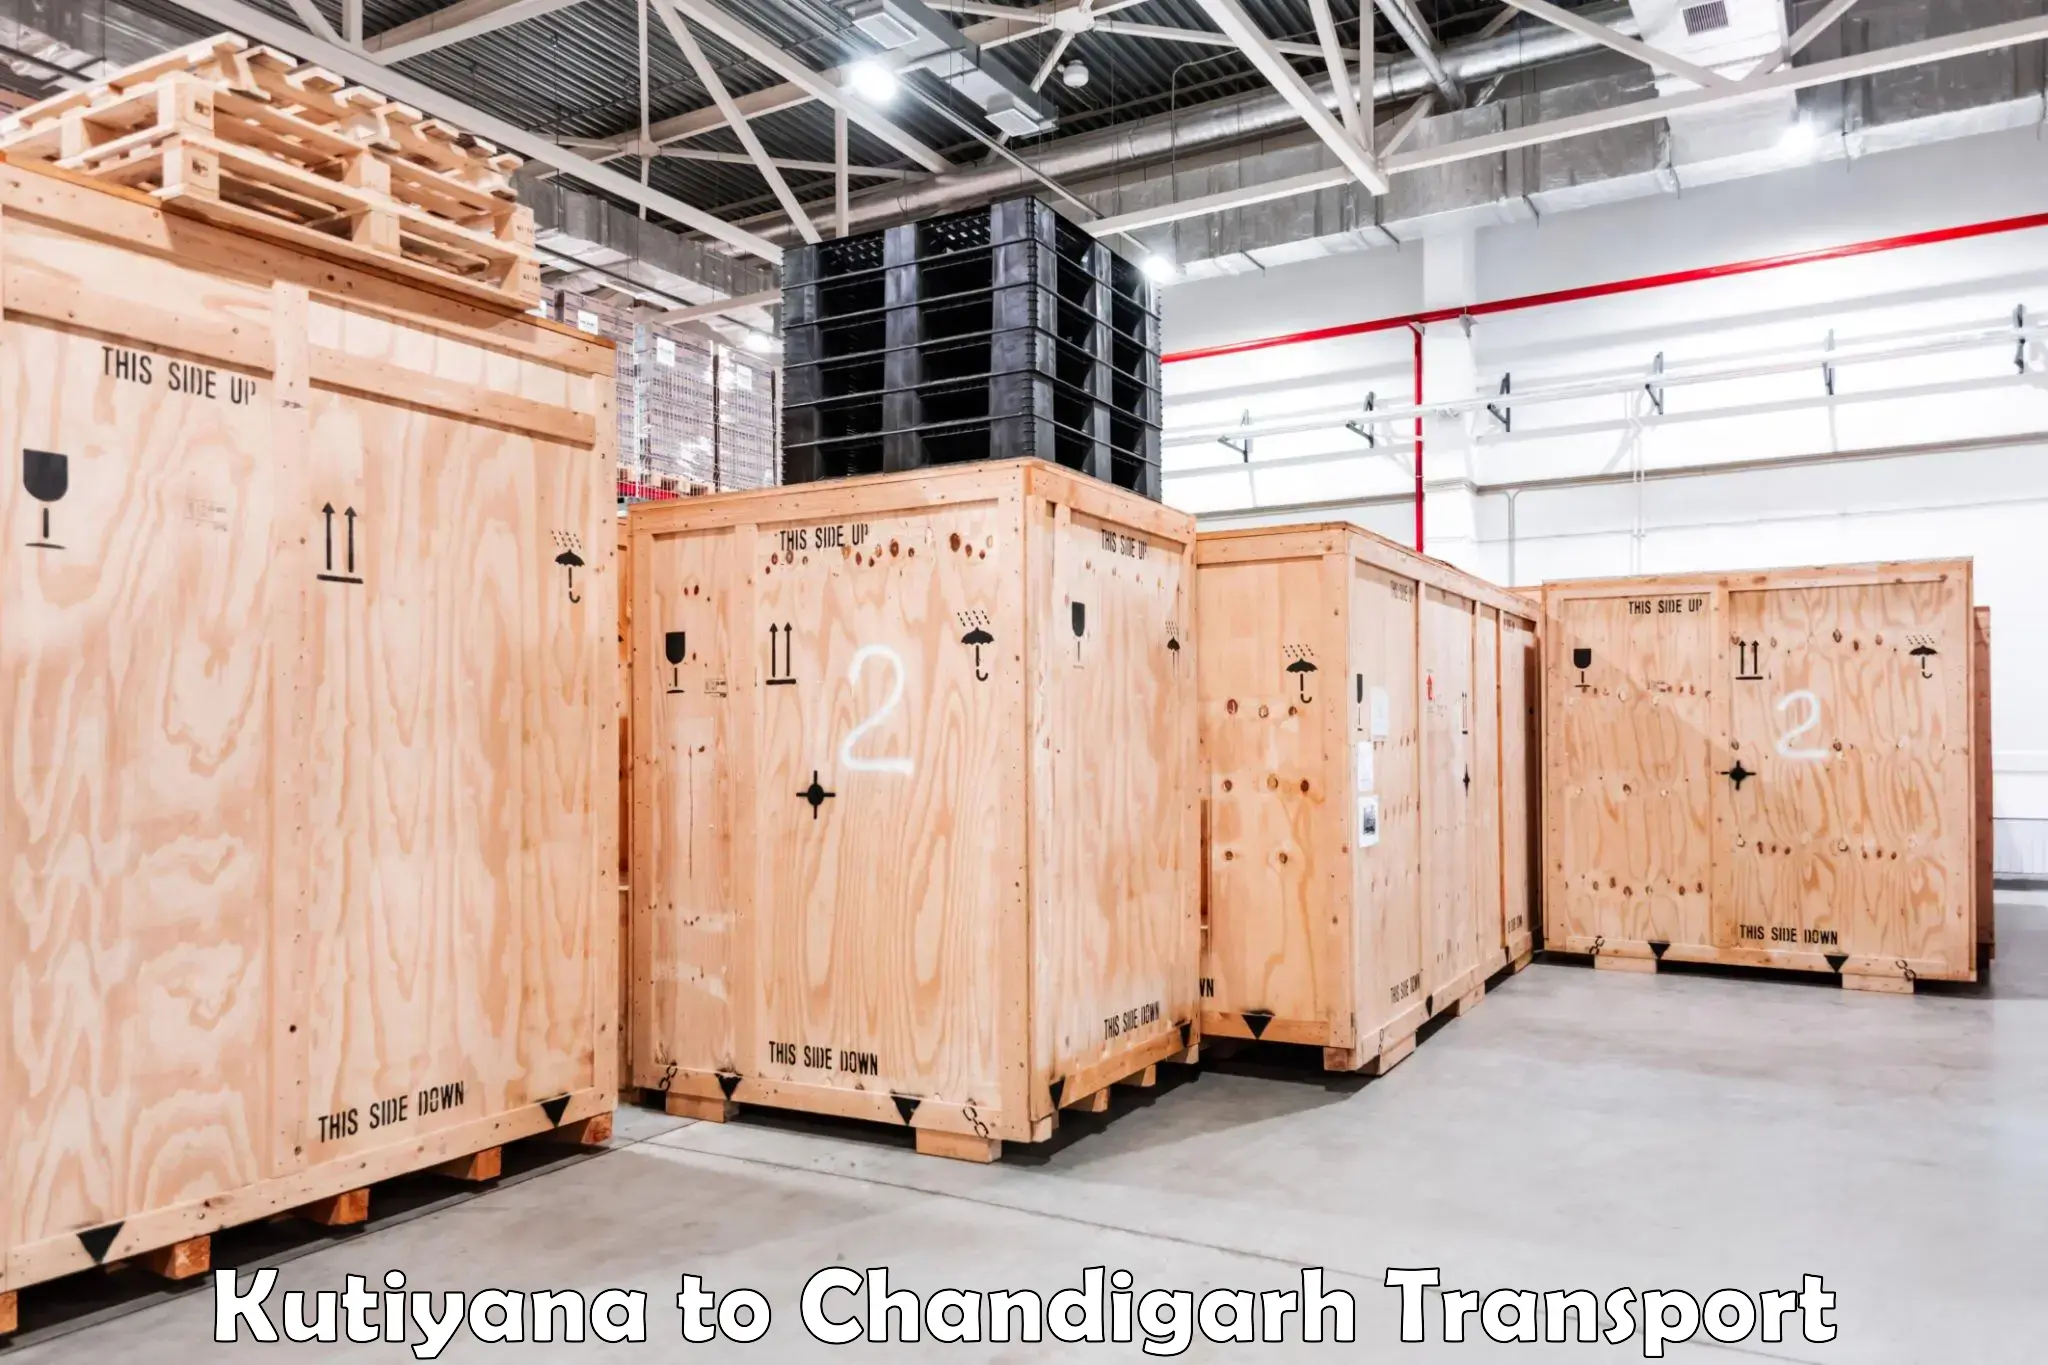 Container transport service Kutiyana to Chandigarh